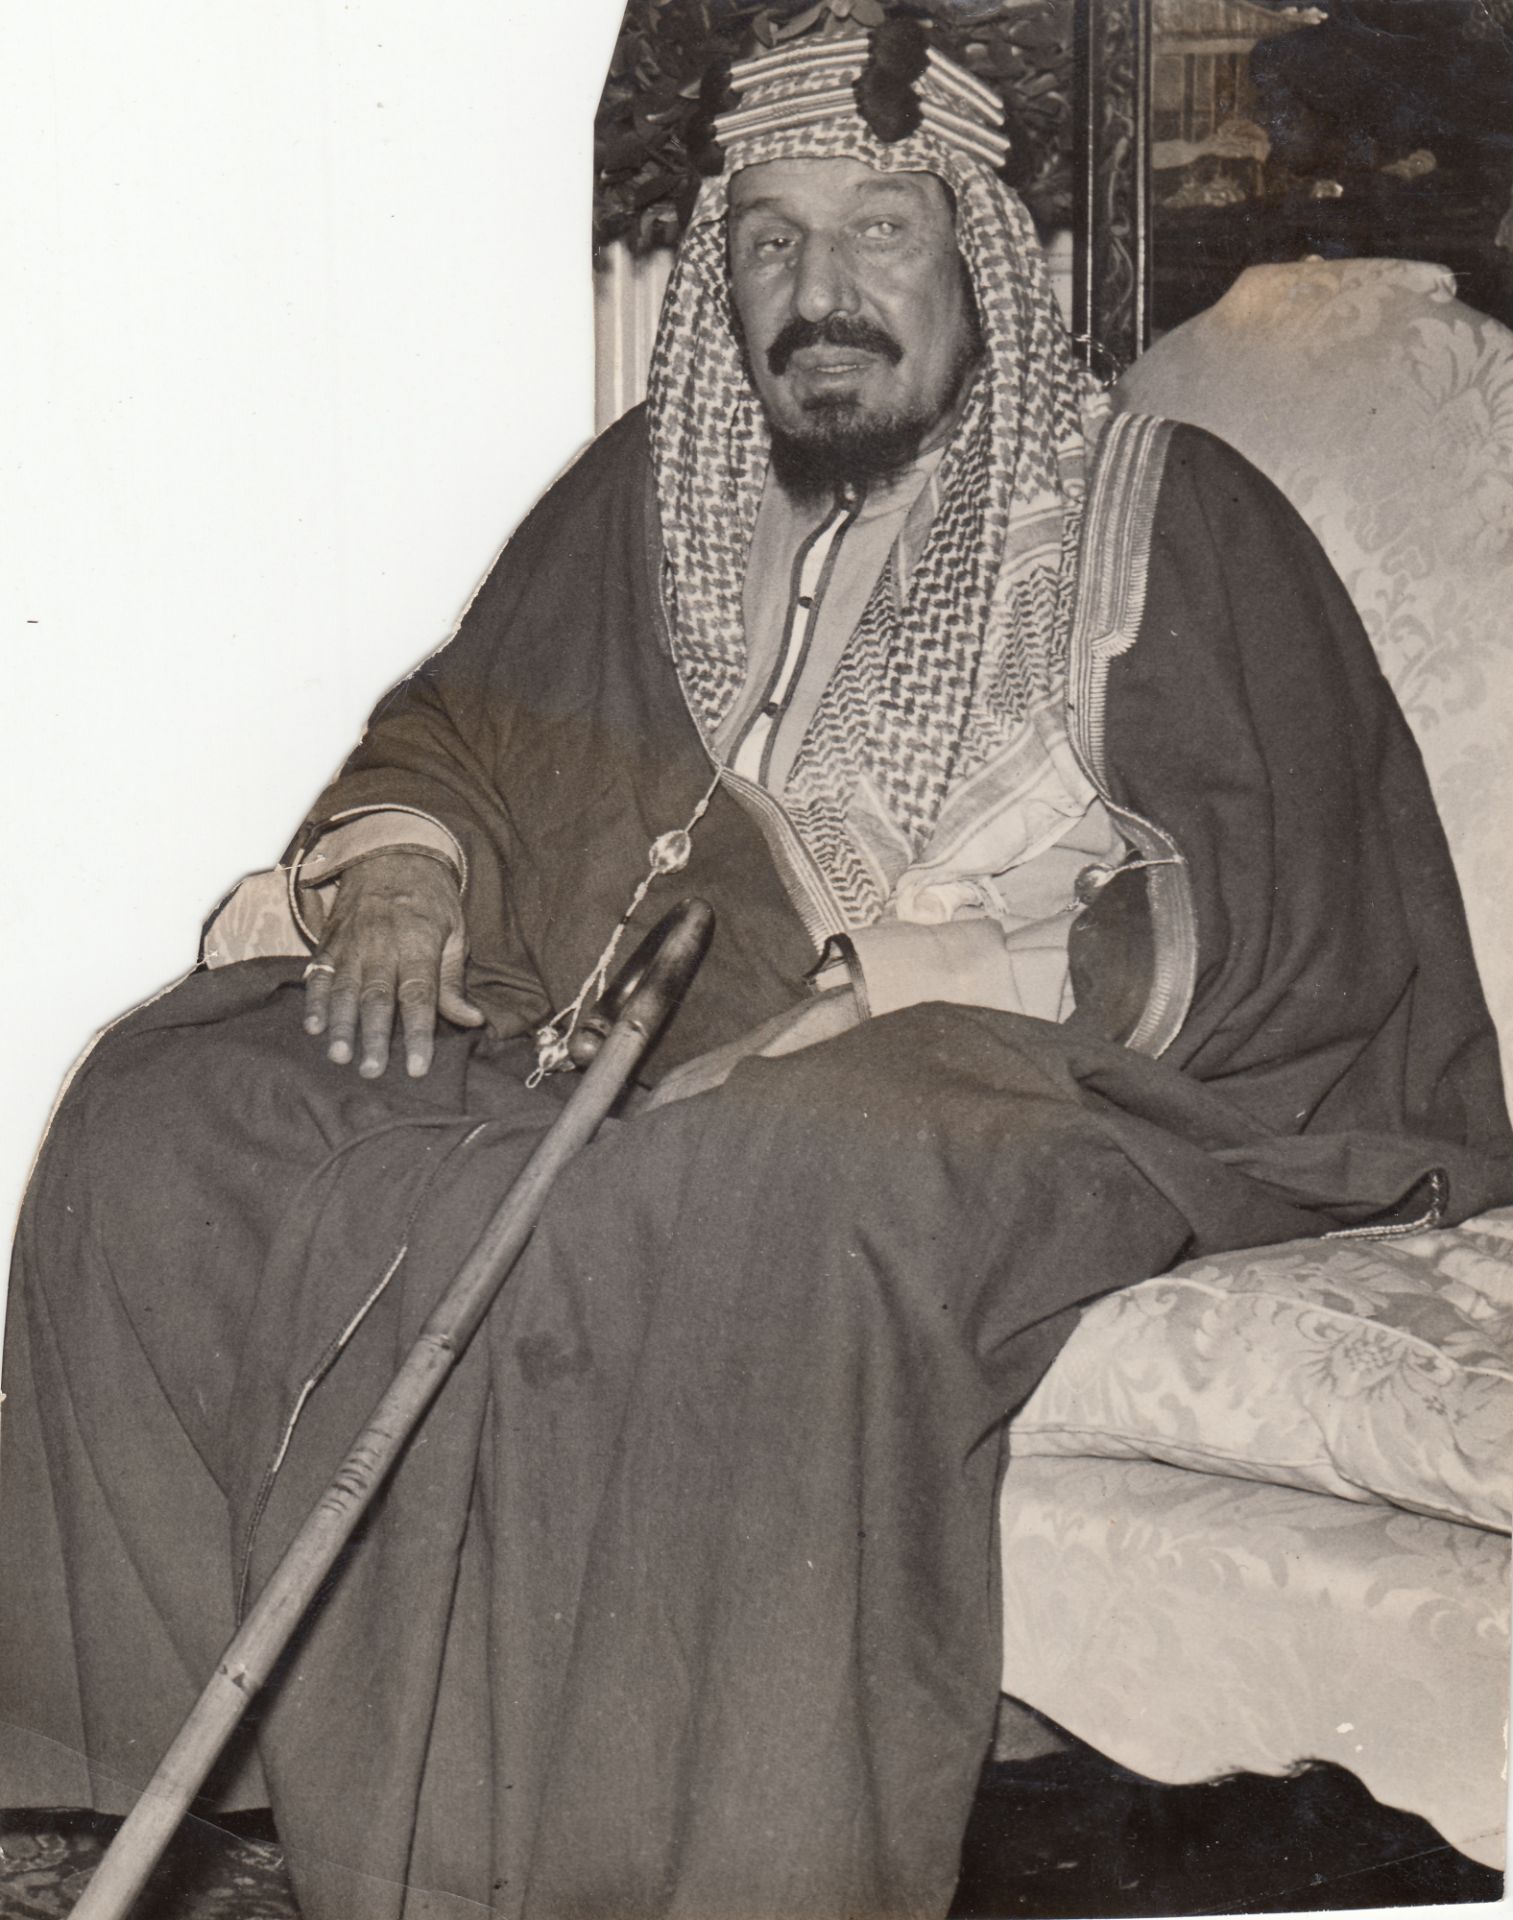 AN ORIGINAL PHOTOGRAPH OF KING ABDULAZIZ AL SAUD THE FIRST